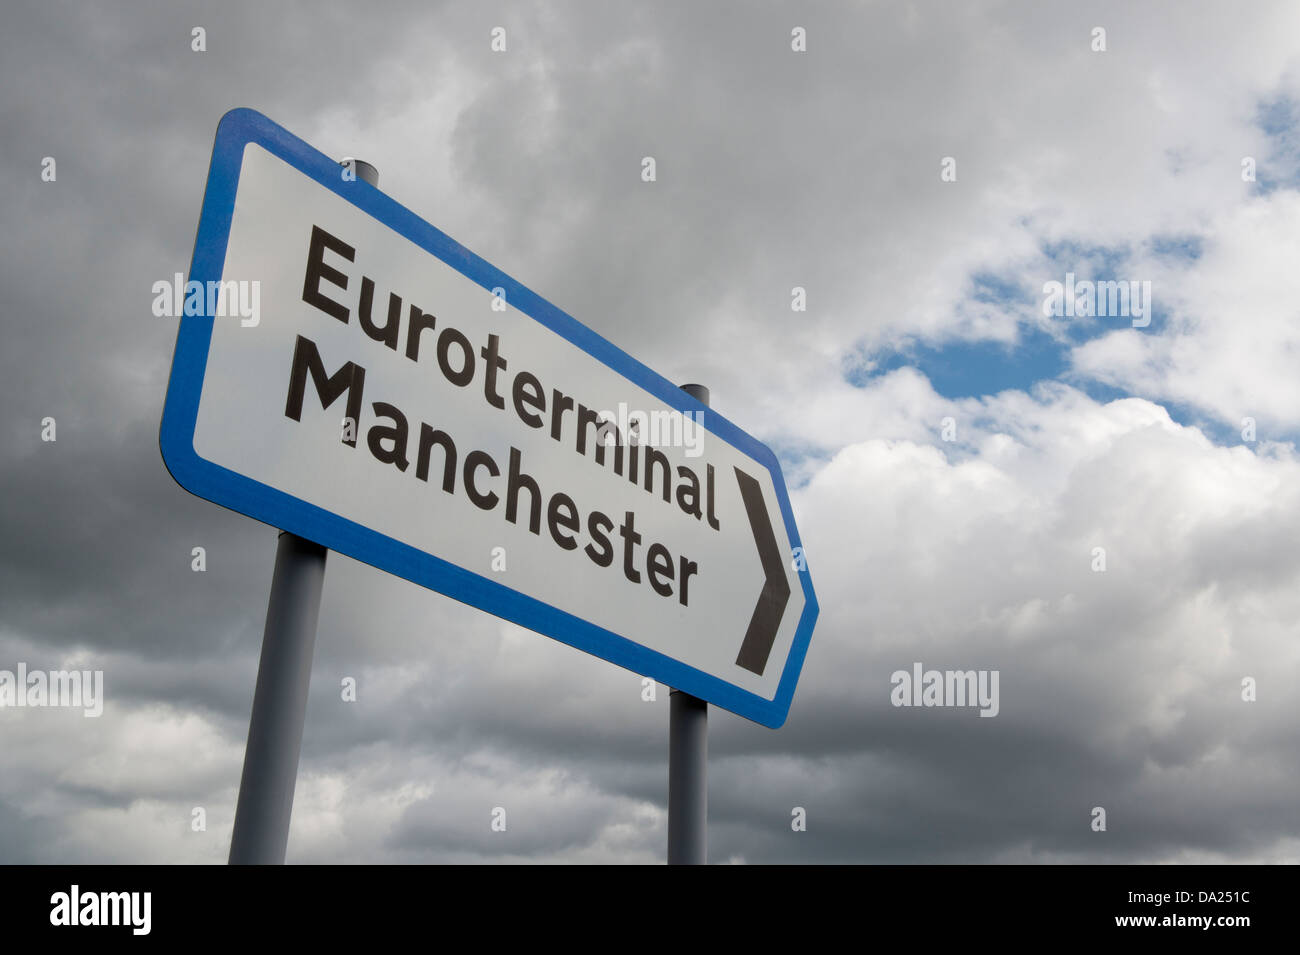 Ein Wegweiser zeigt die Richtung der Euroterminal Manchester Trafford Park gedreht gegen ein stimmungsvoller Himmel (nur zur redaktionellen Verwendung) Stockfoto